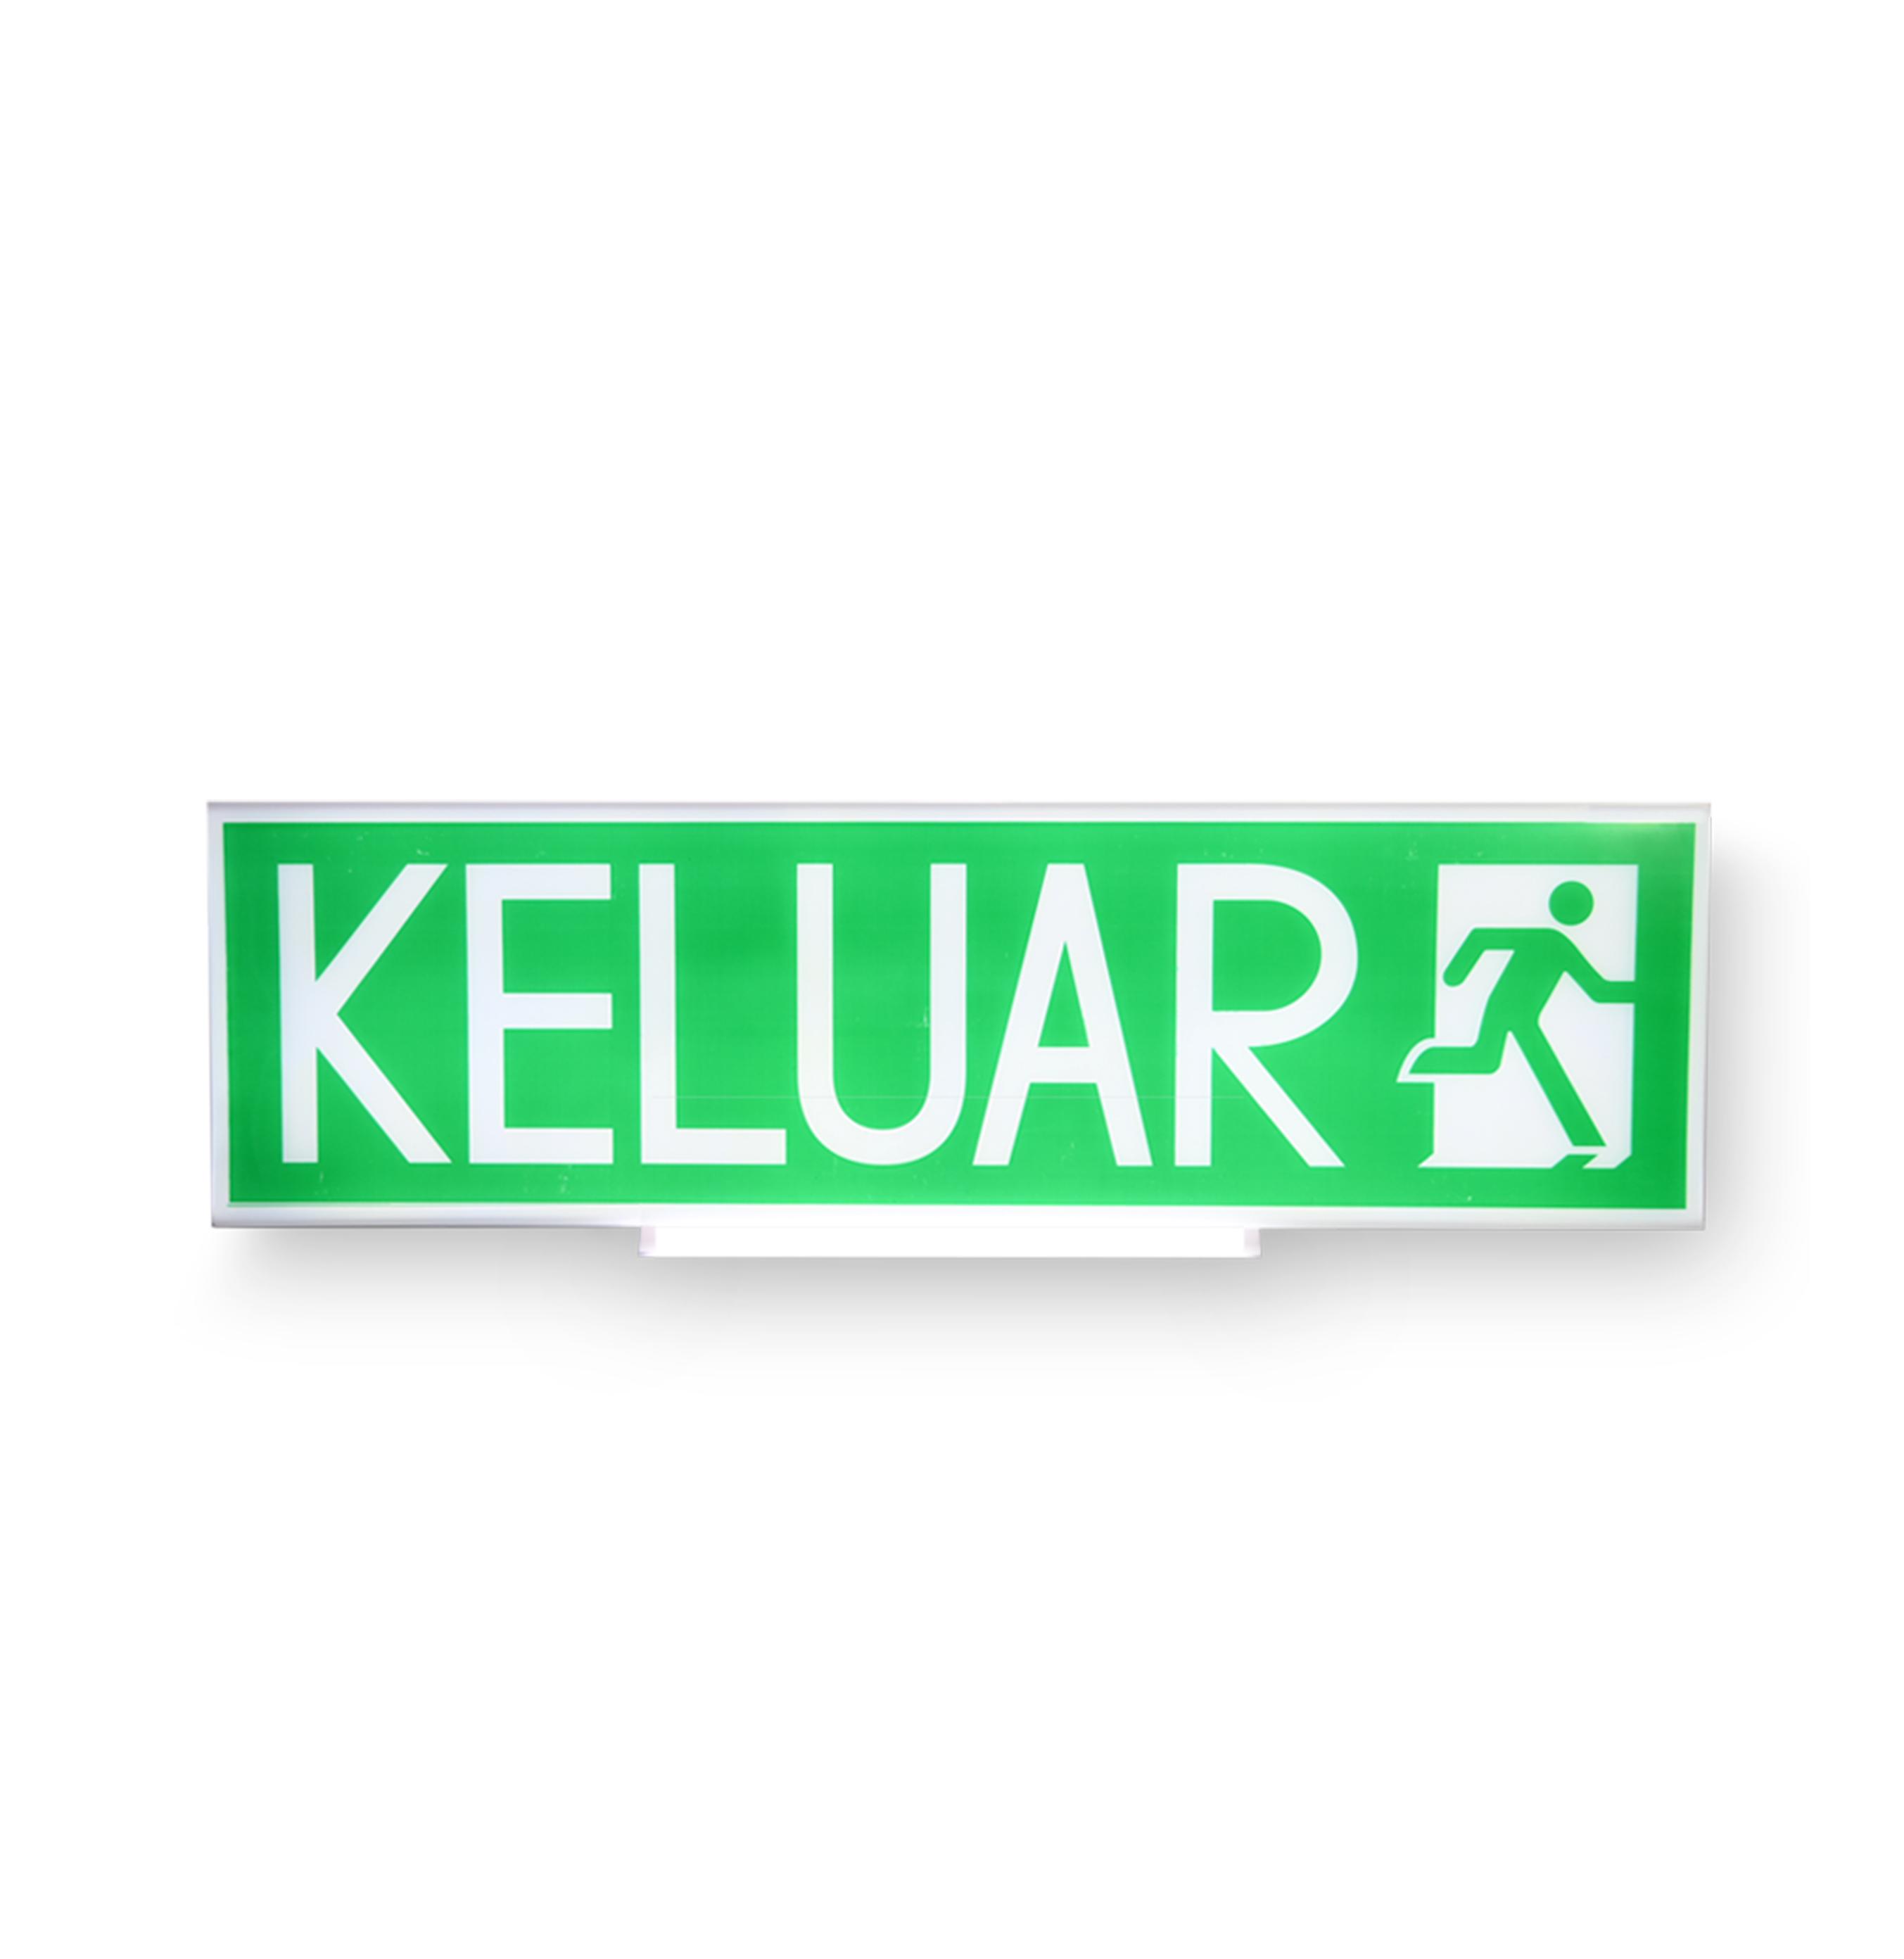 LED Keluar Sign / Emergency Light - Image 1